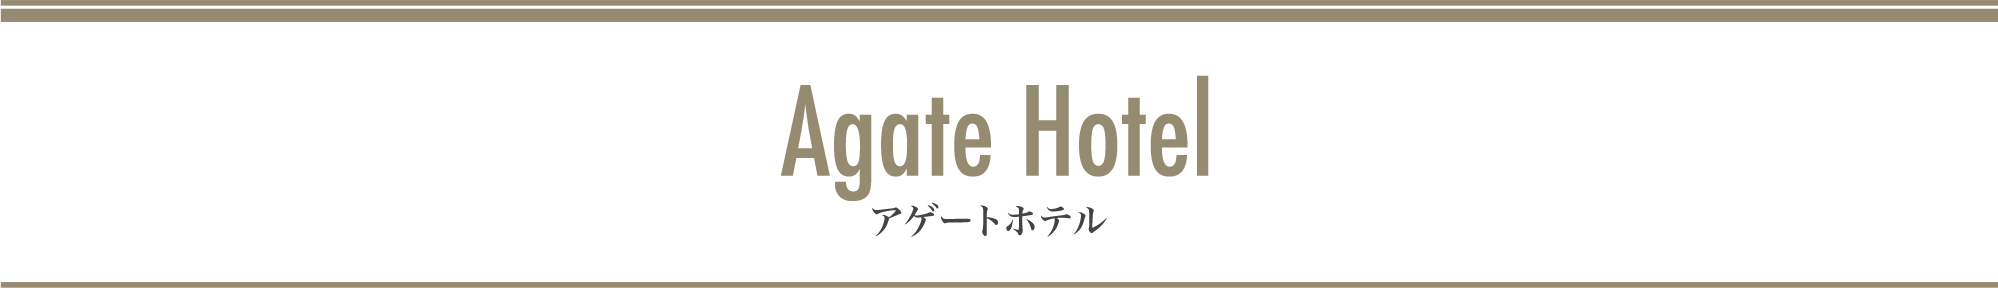 Agate Hotel アゲートホテル